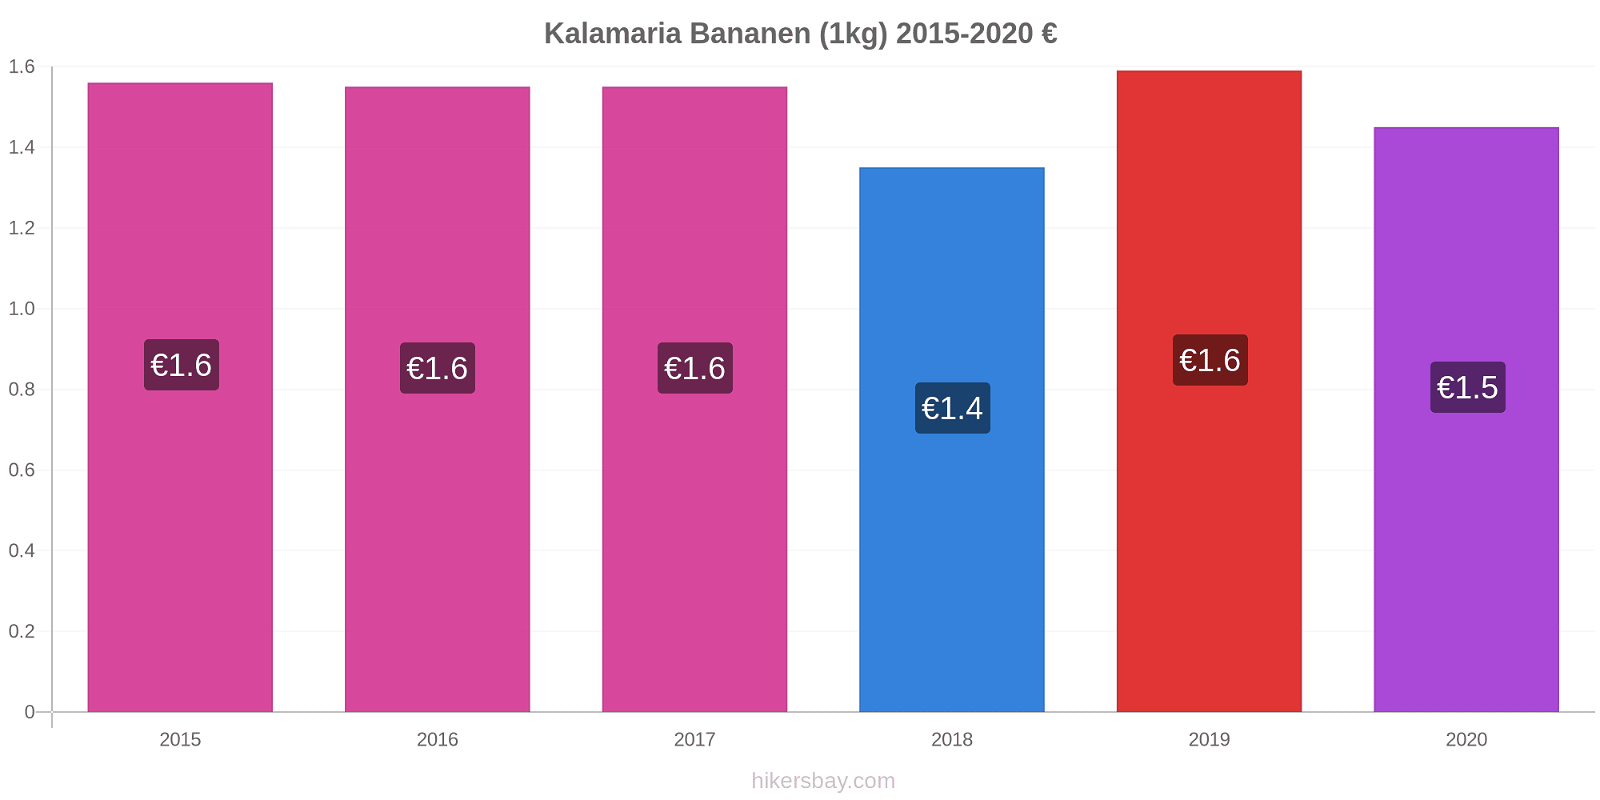 Kalamaria prijswijzigingen Banaan (1kg) hikersbay.com